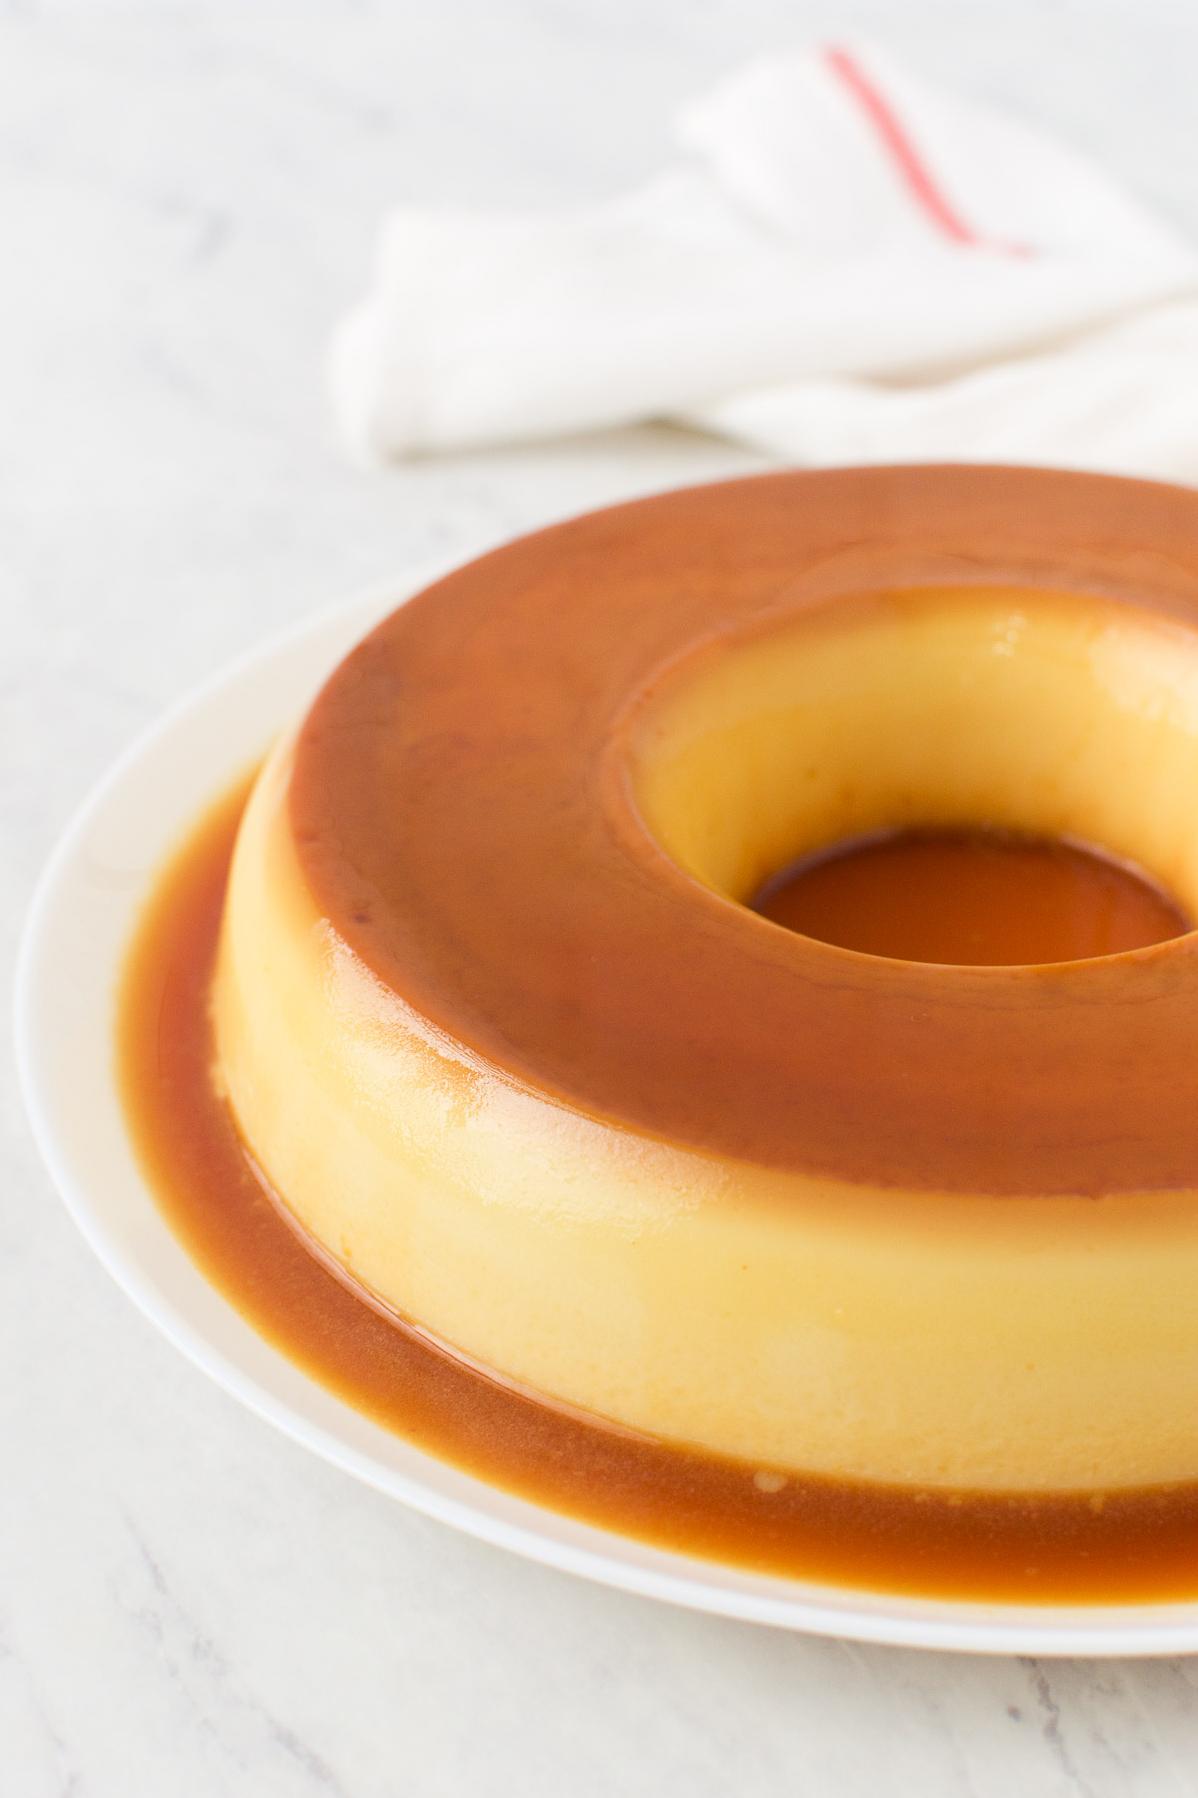 Delicious Brazilian Milk Pudding Recipe – Easy to Make!